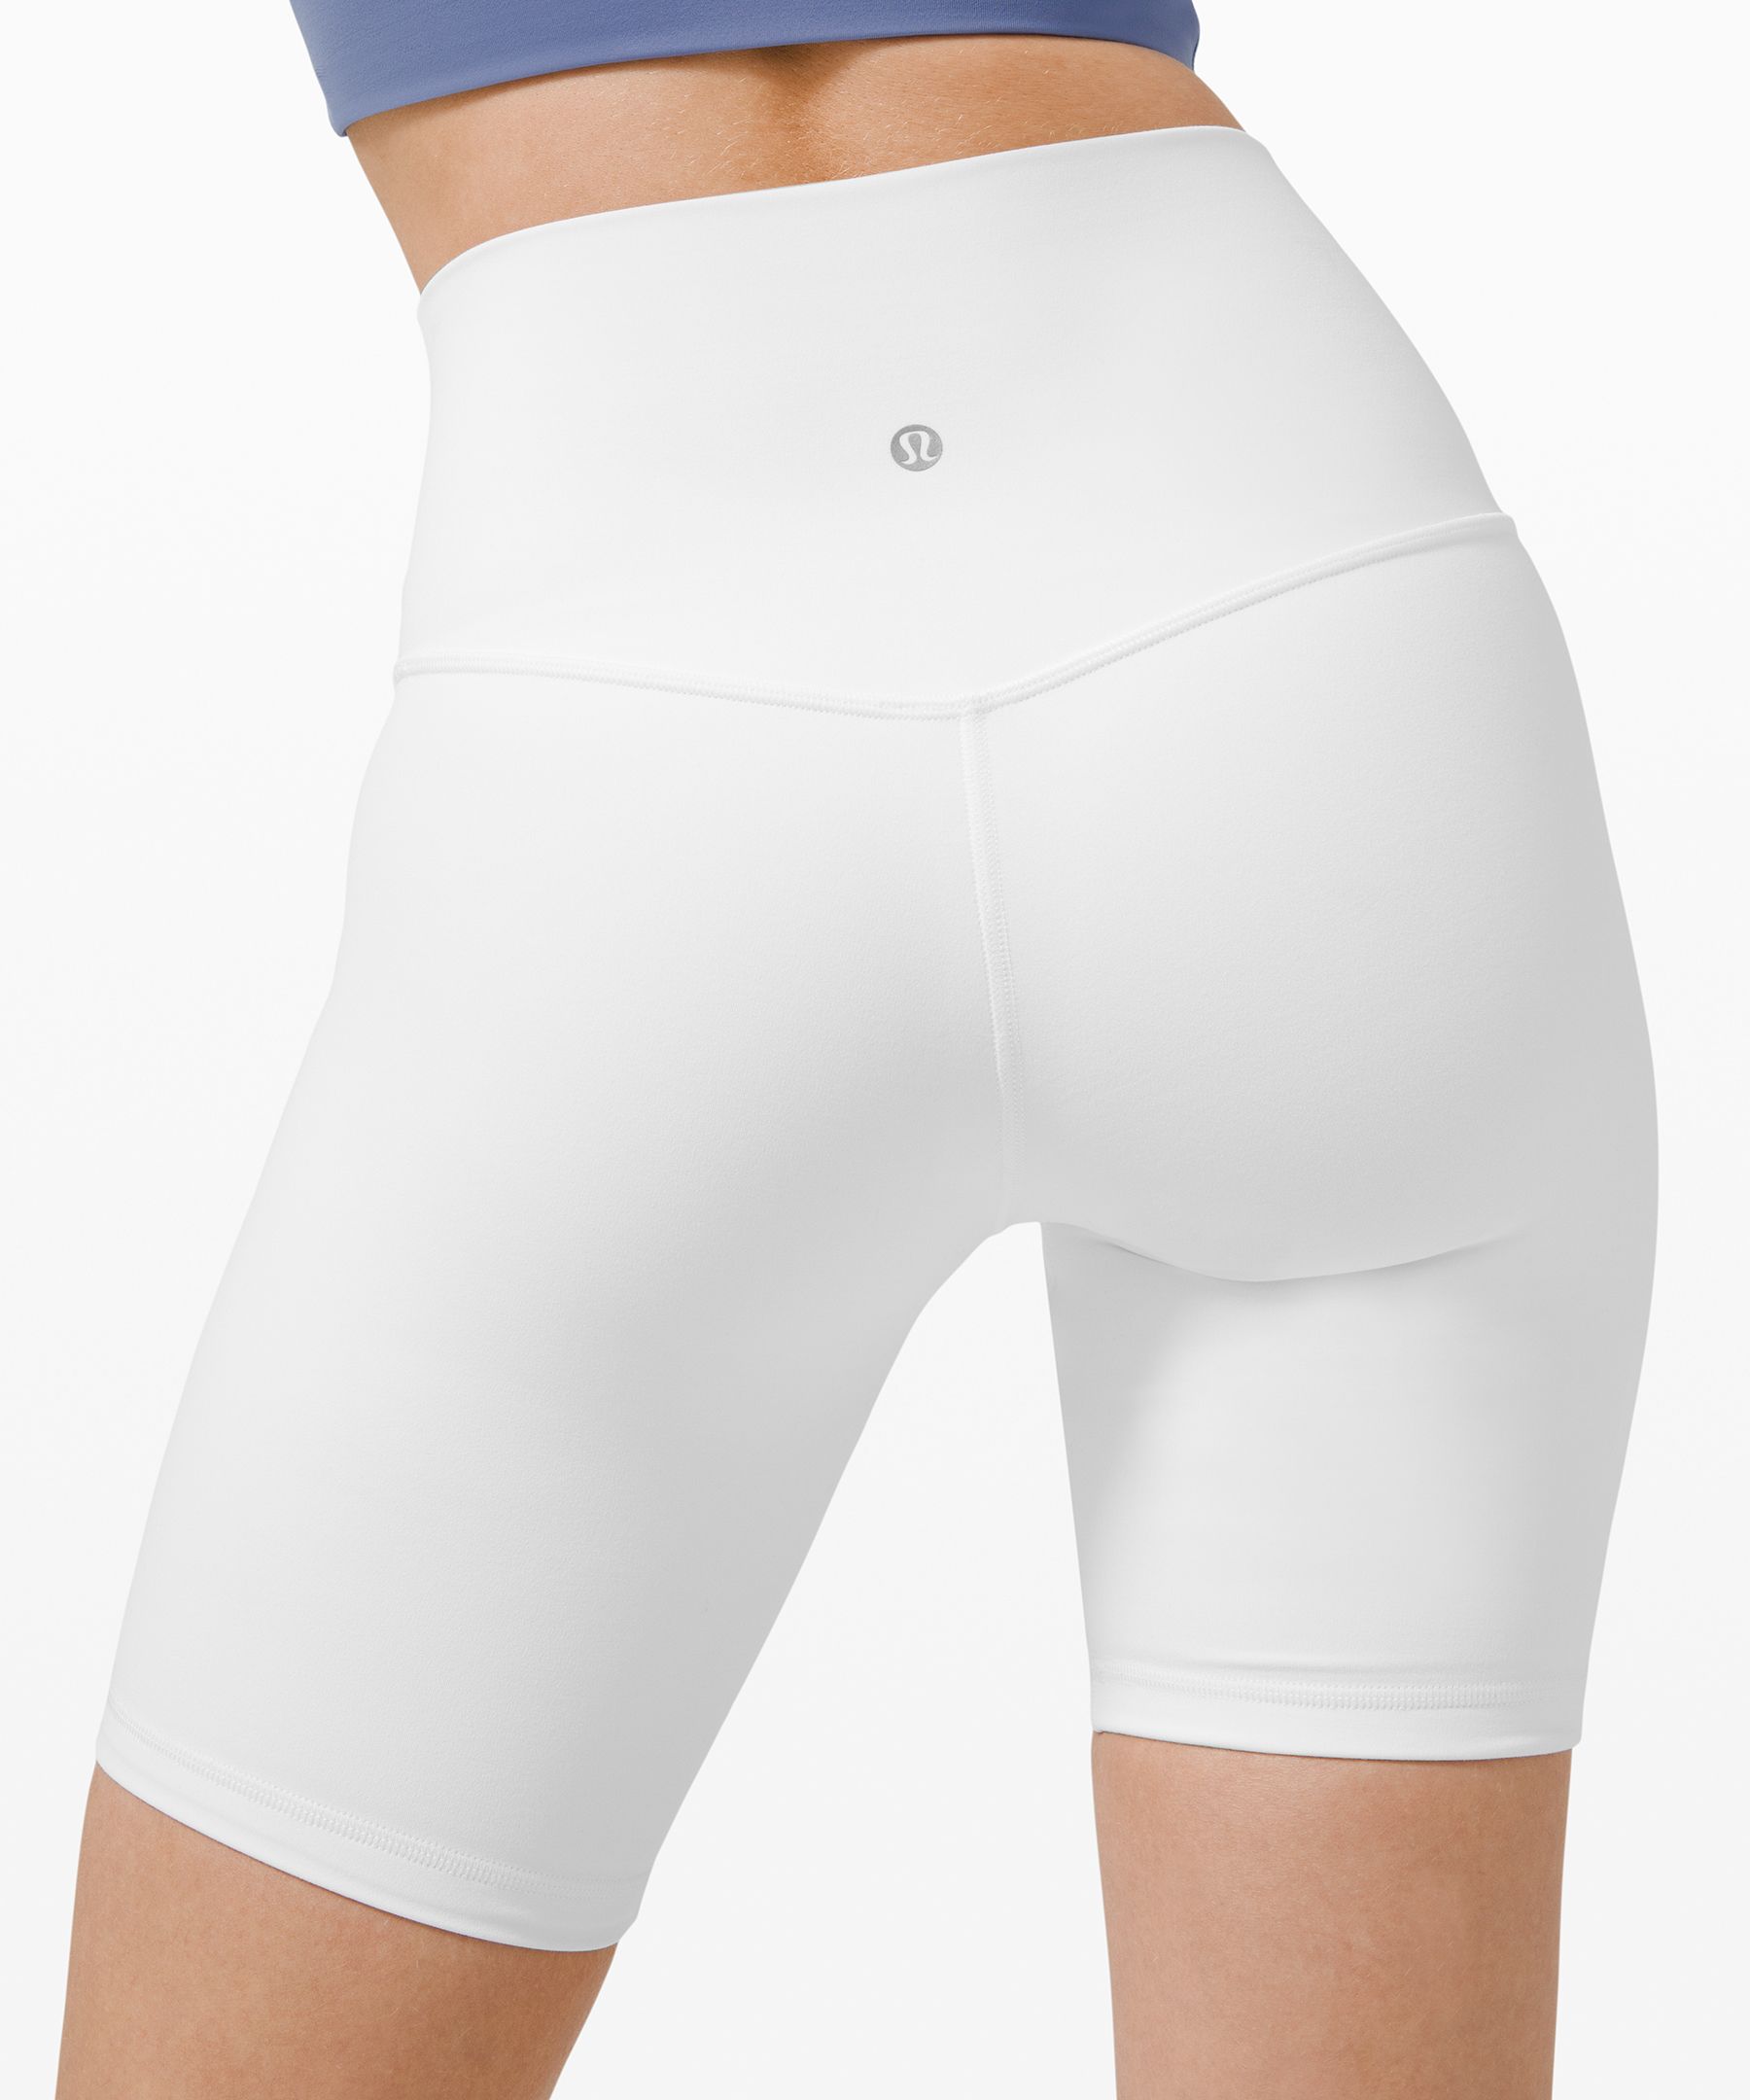 lululemon Align™ Short 8 curated on LTK  White biker shorts, Biker shorts  outfit, White spandex shorts